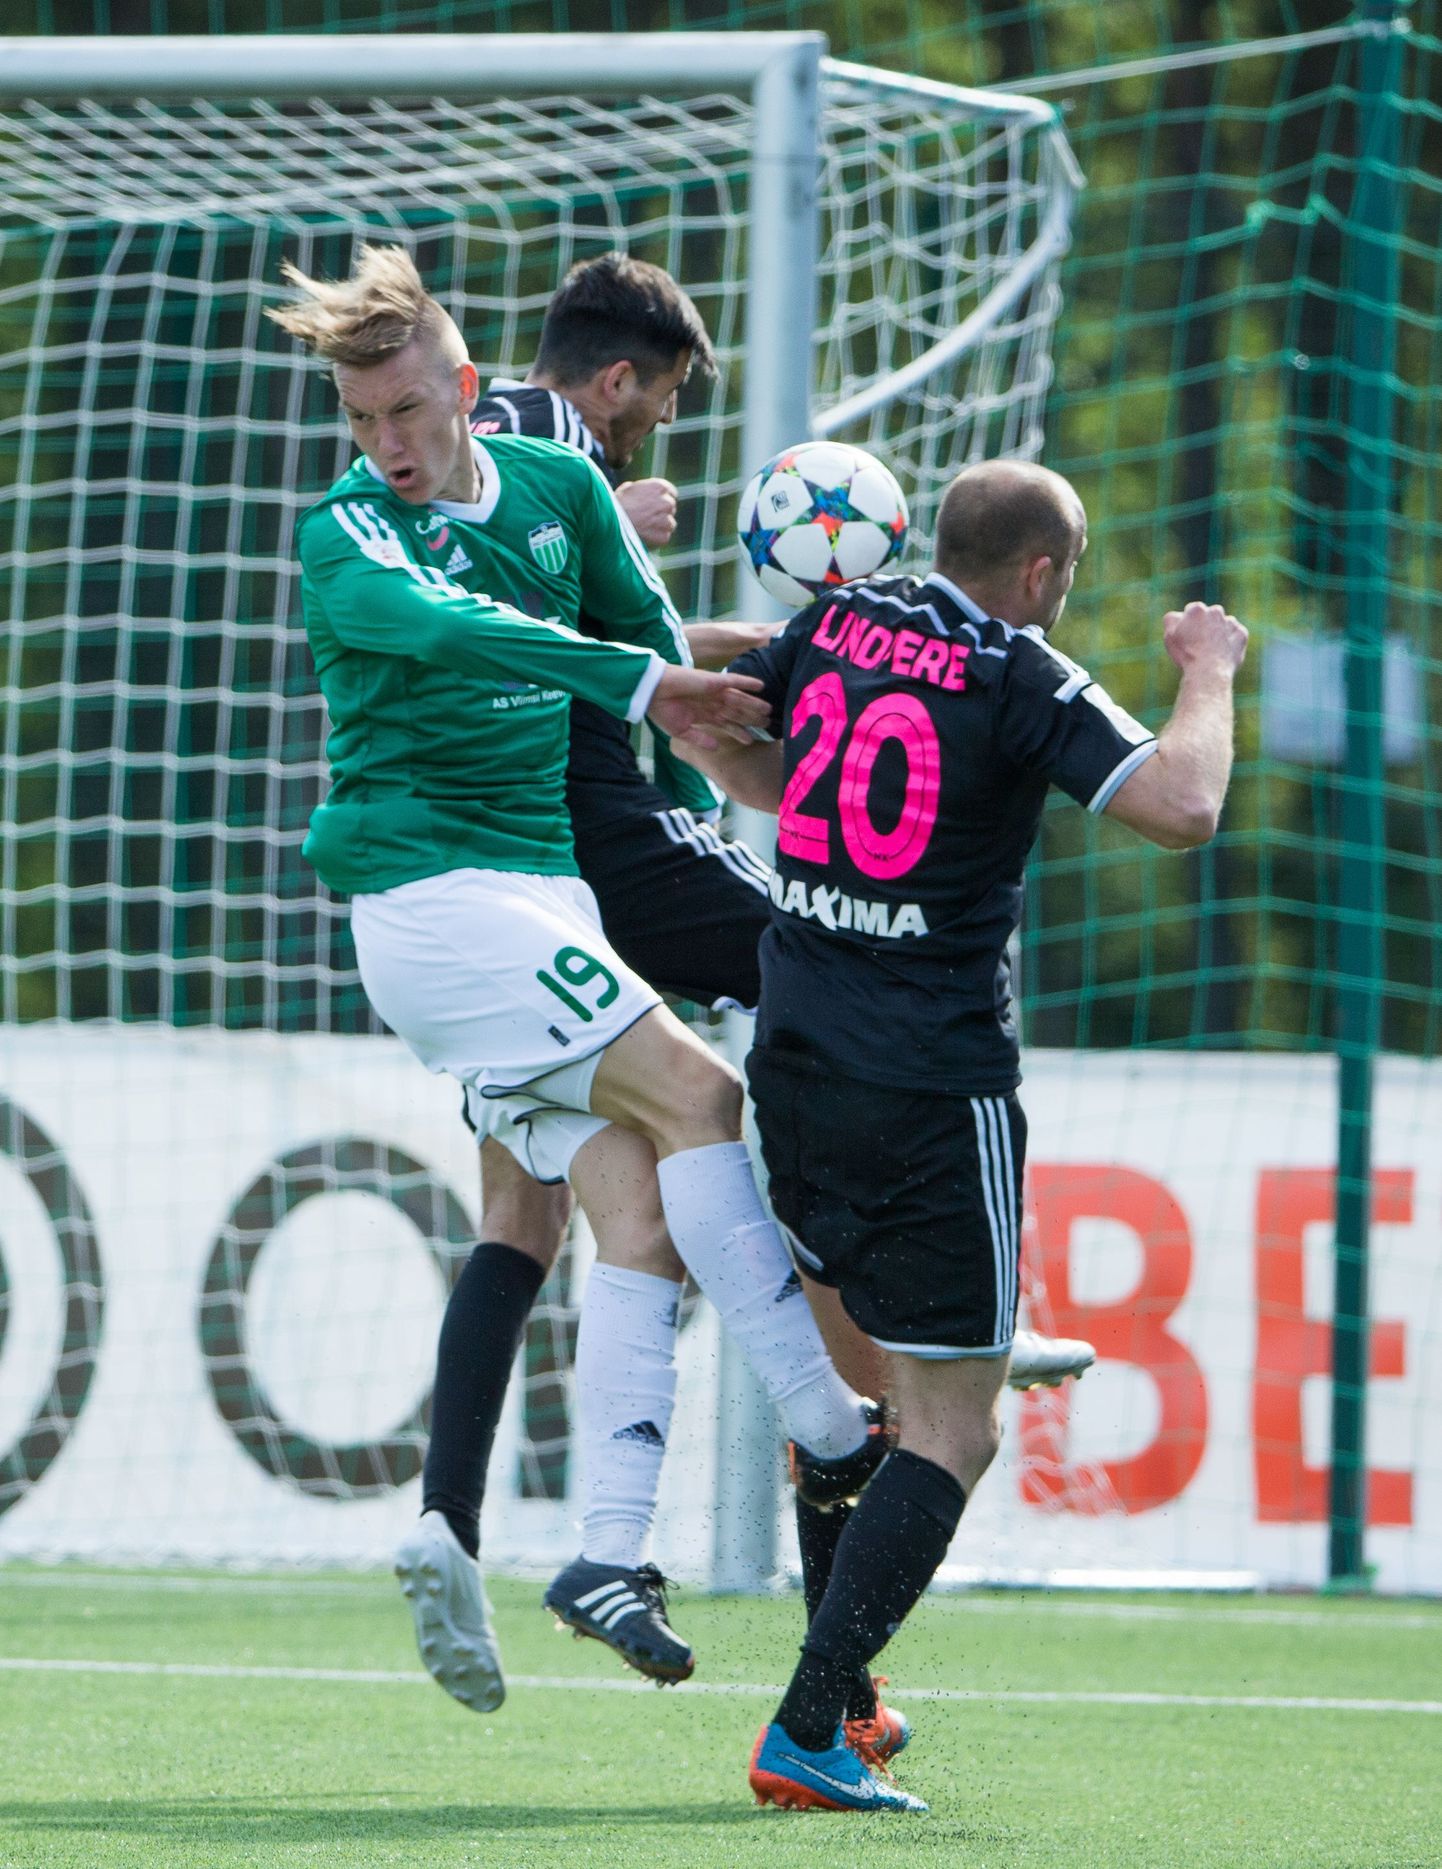 Pärnust pärit jalgpallur Rasmus Peetson (rohelises), kes eelmisel hooajal liitus pealinna FC Levadia meeskonnaga, sai esmakordselt kutse Eesti koondisesse septembri alguses peetavateks EM-valikkohtumisteks Leedu ja Sloveenia koondisega.